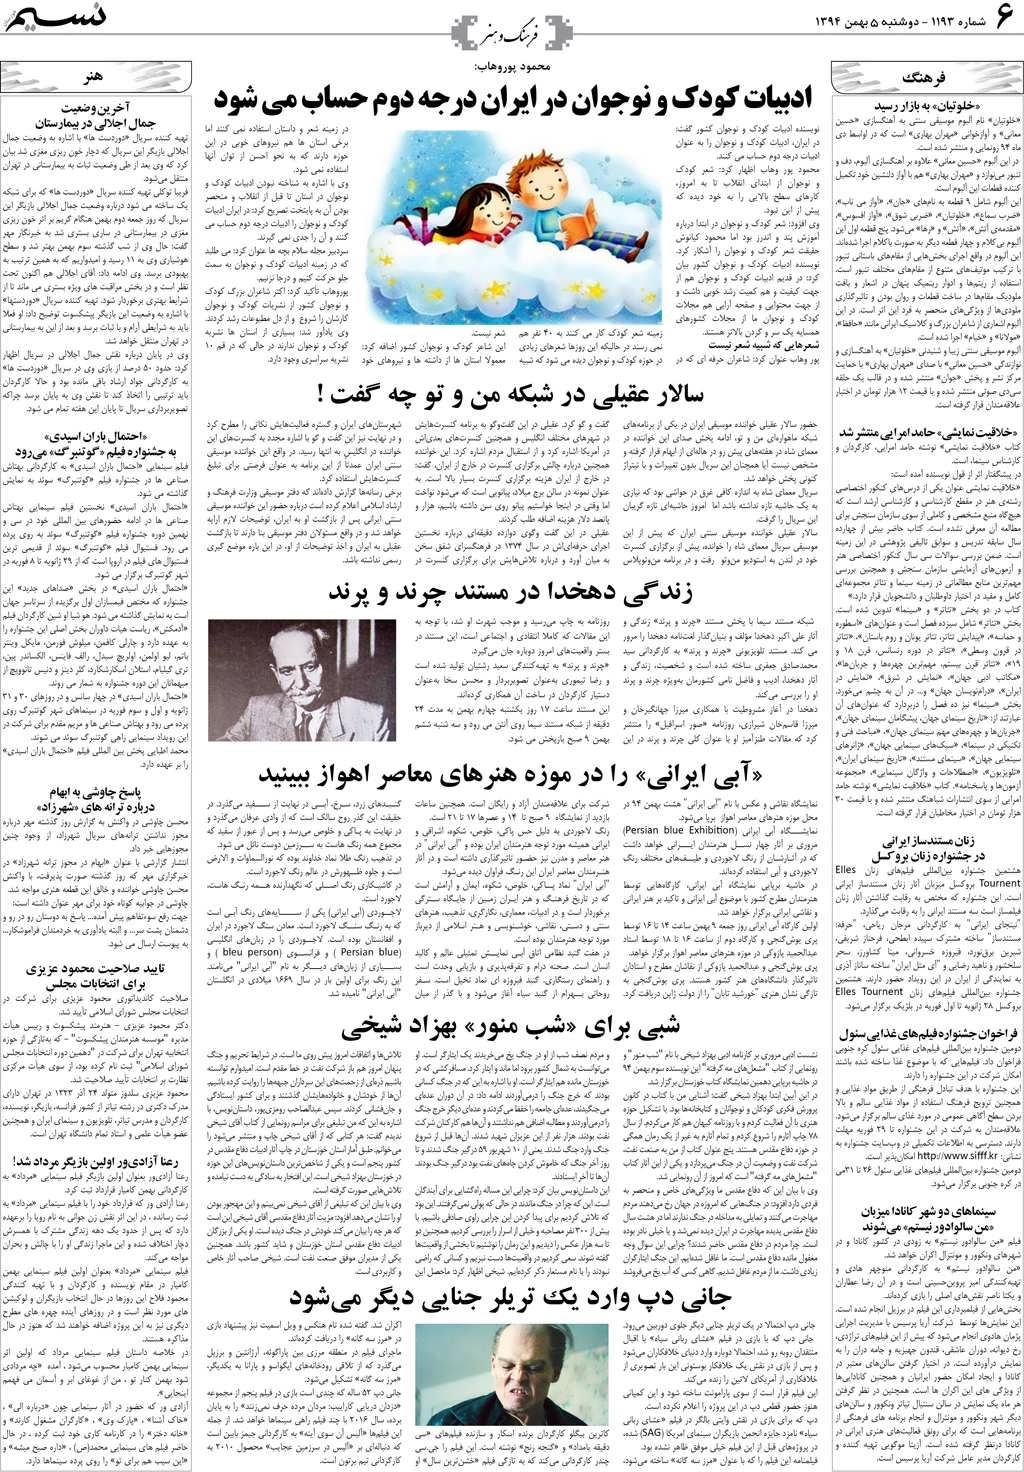 صفحه فرهنگ و هنر روزنامه نسیم شماره 1193